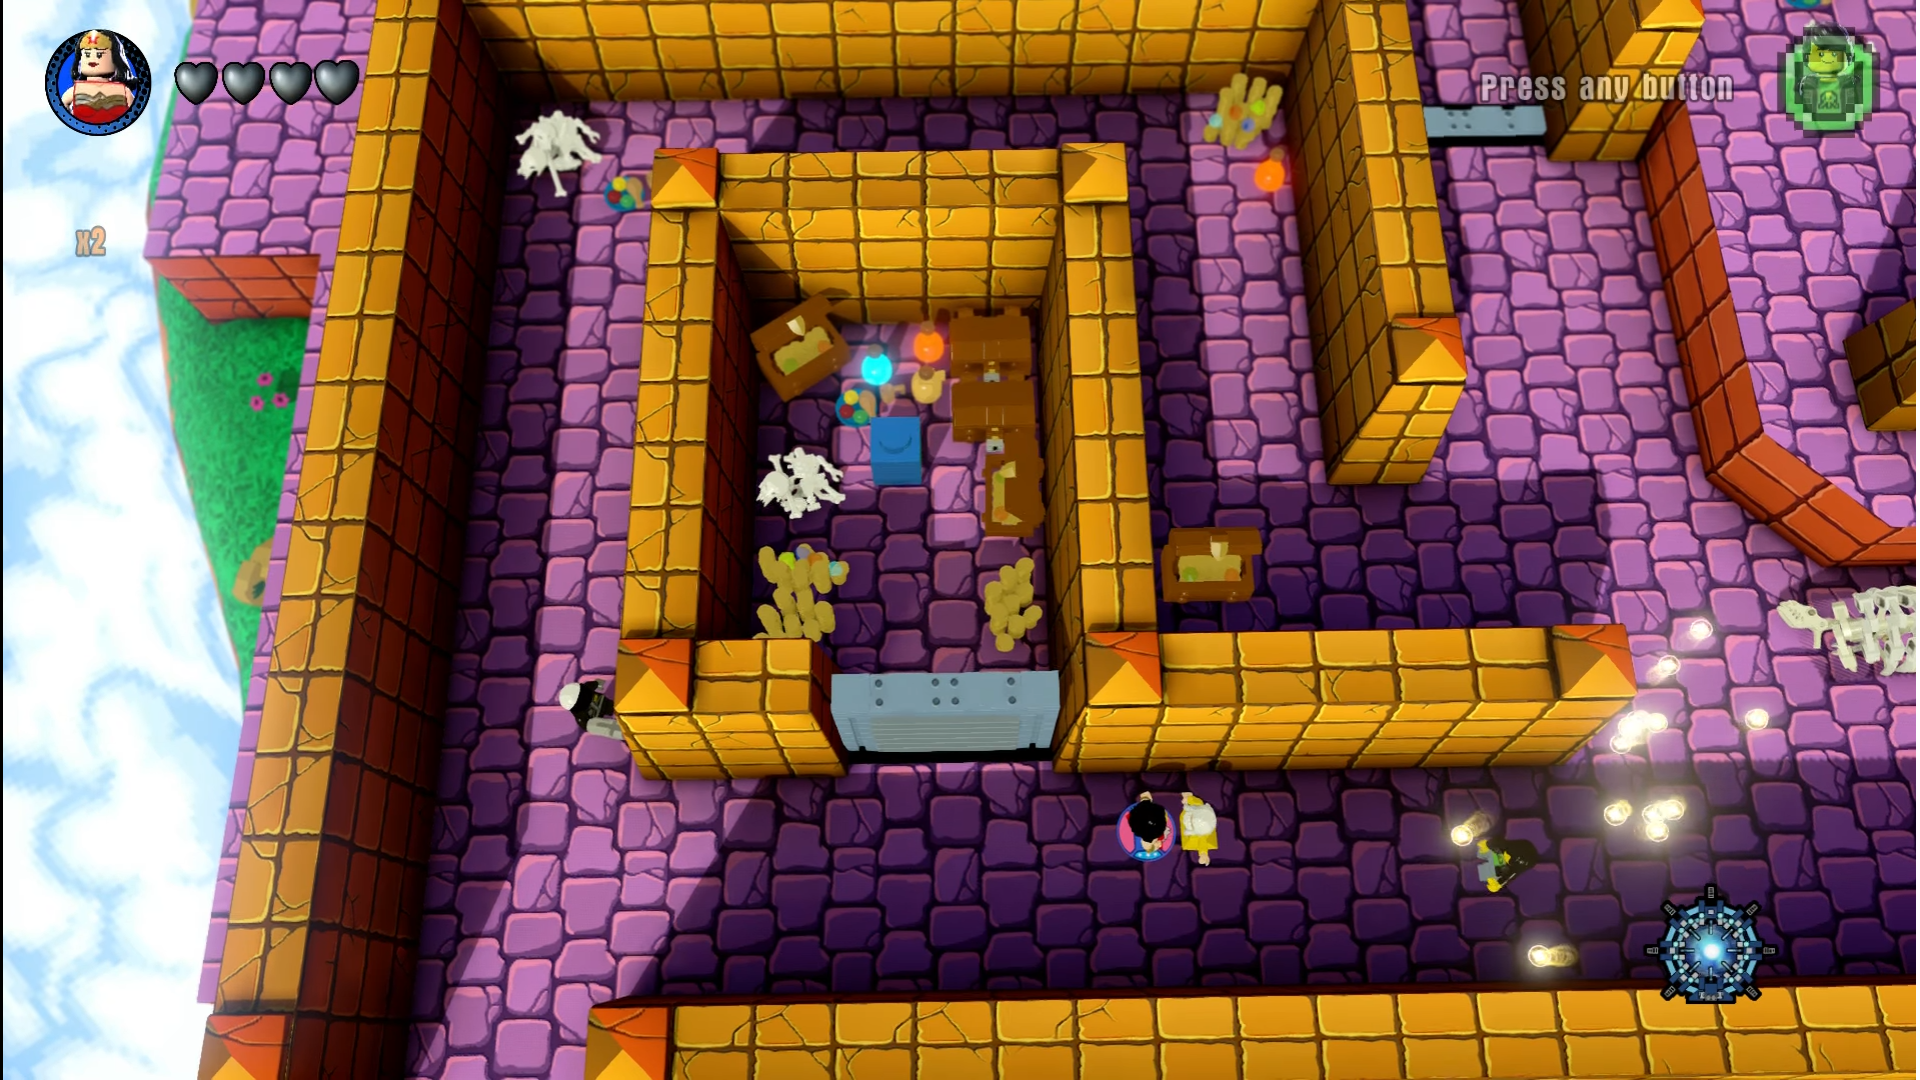 'Gauntlet' Maze - Midway Arcade Adventure World